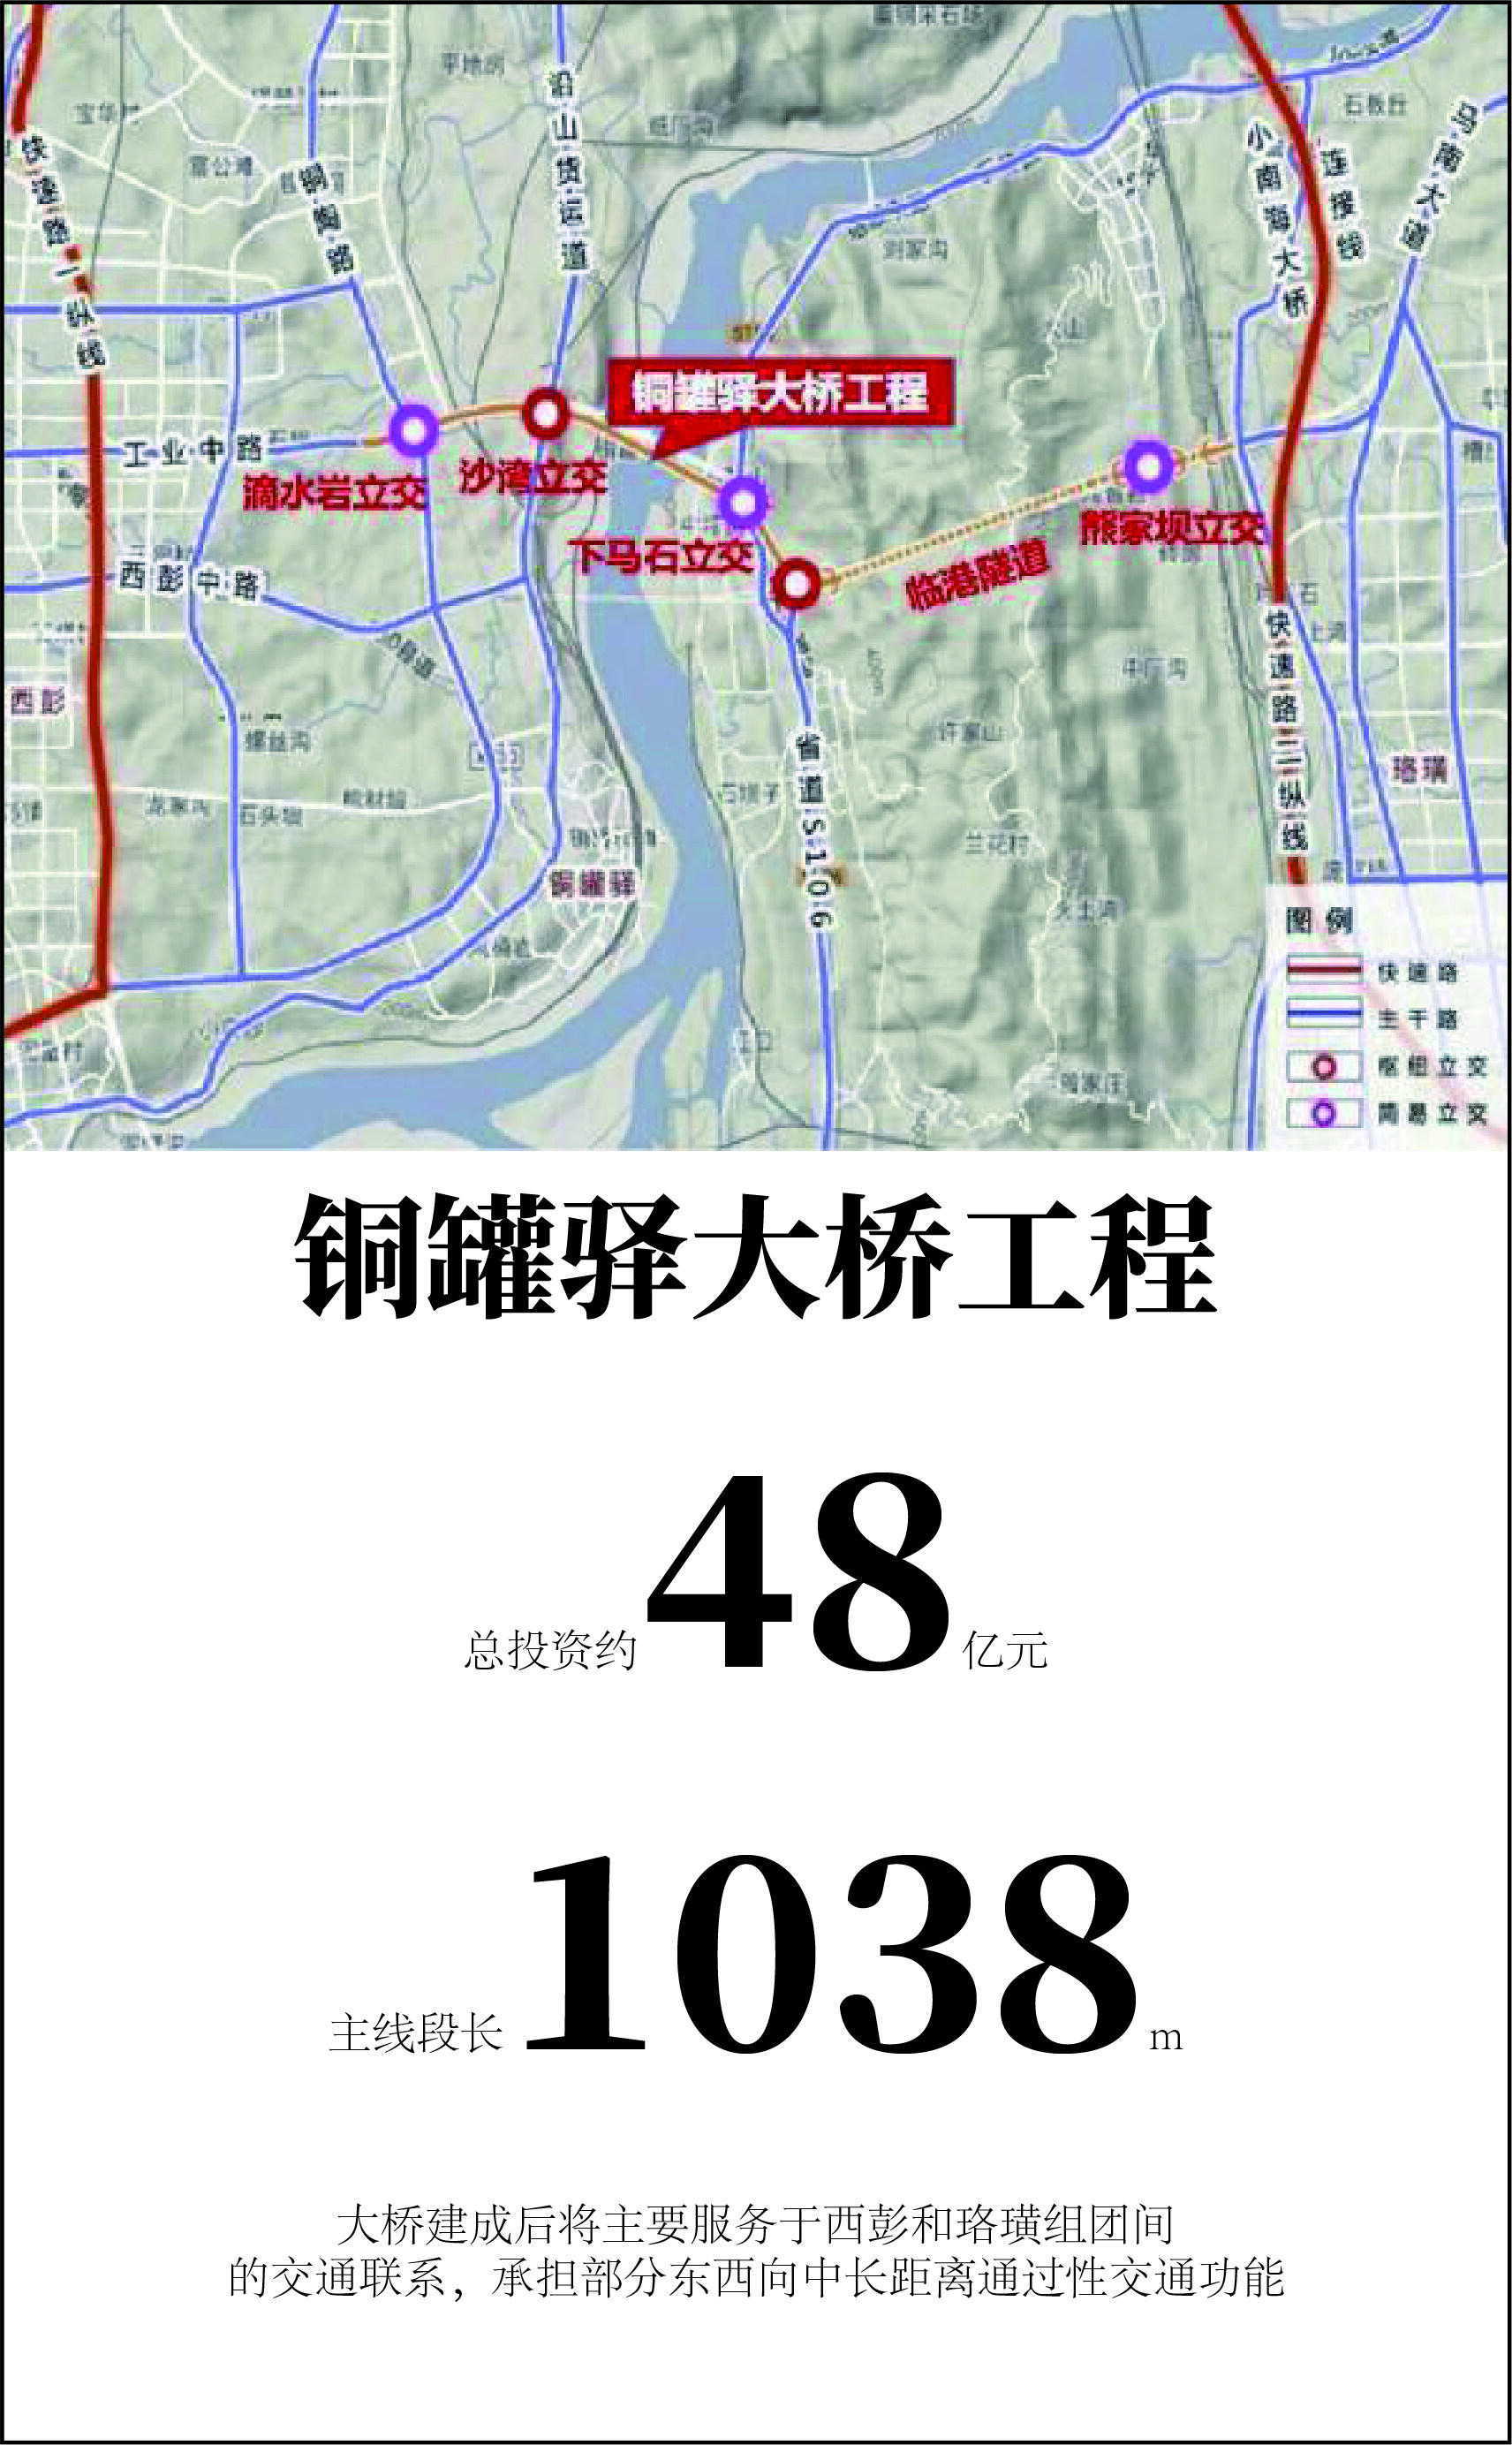 重庆铜罐驿长江大桥离开工又近了一步,总投资约48亿元